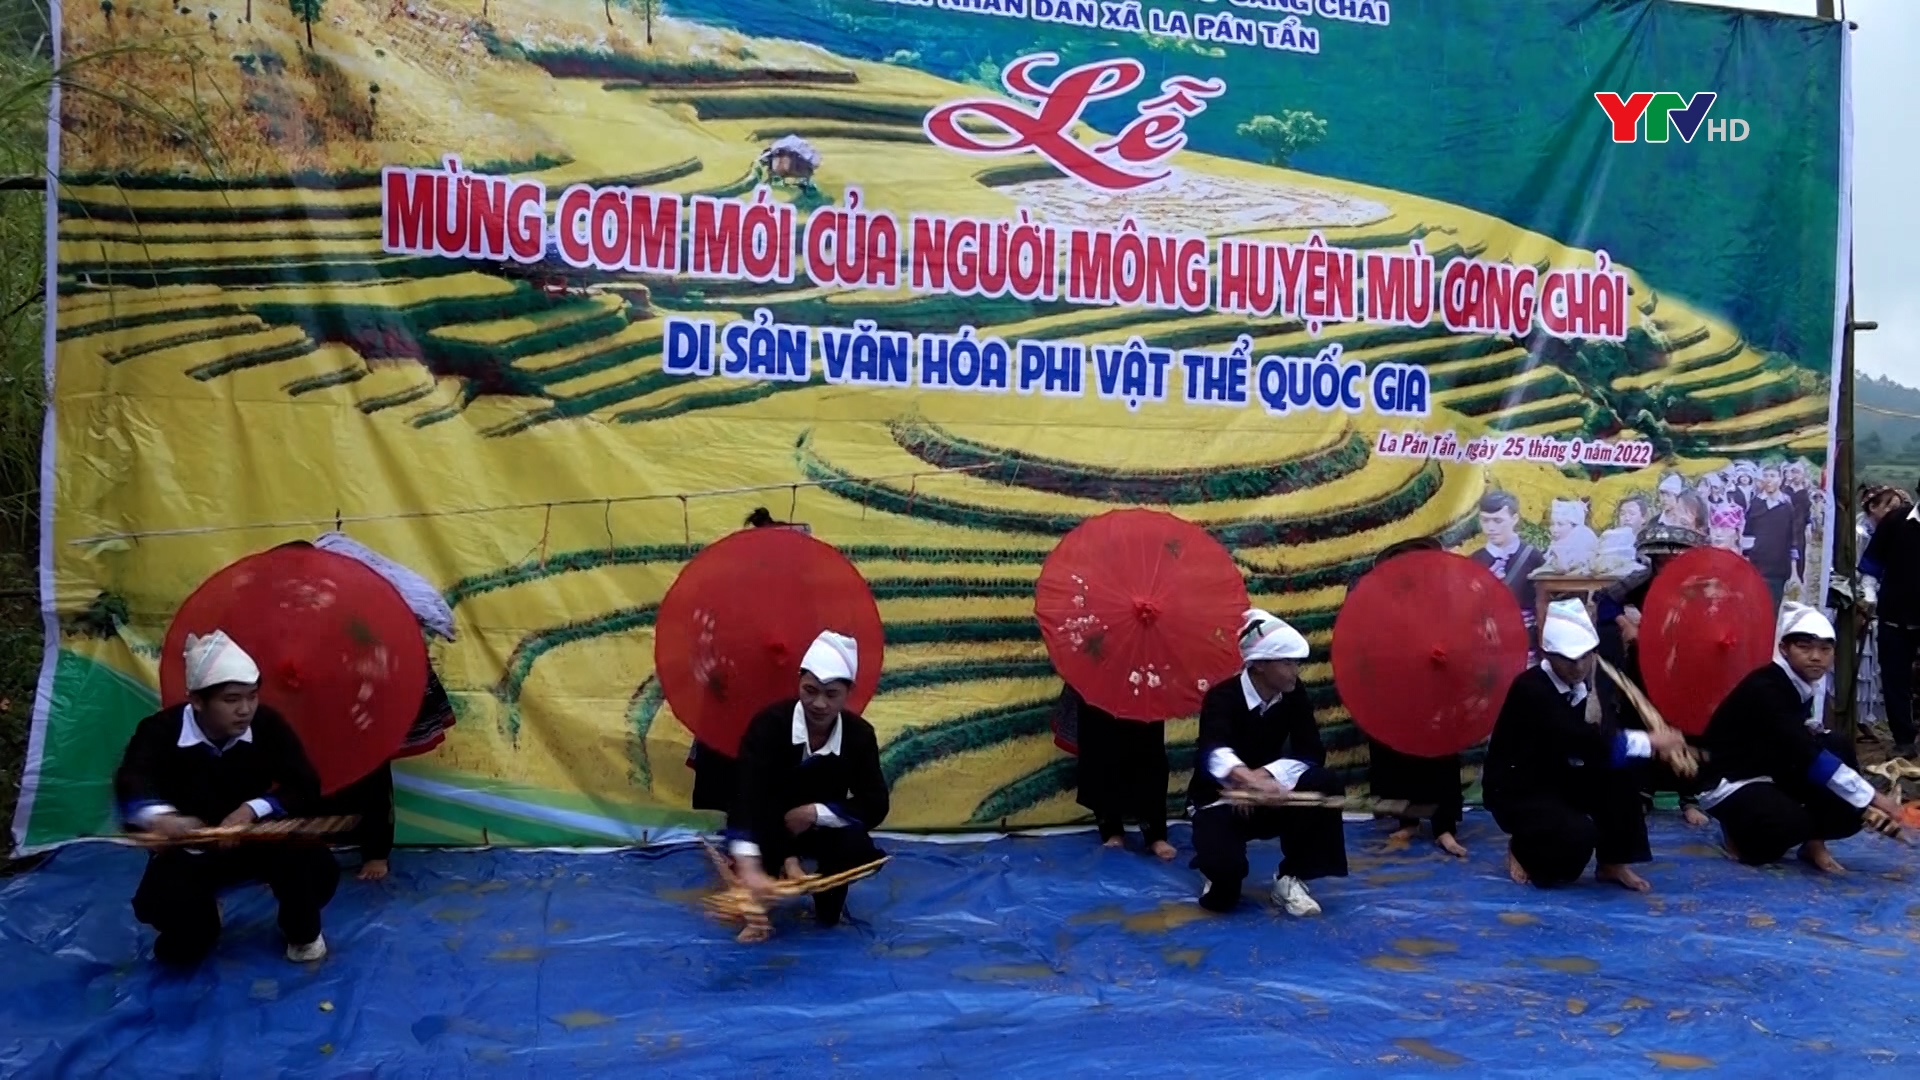 Huyện Mù Cang Chải tổ chức Lễ mừng cơm mới năm 2022